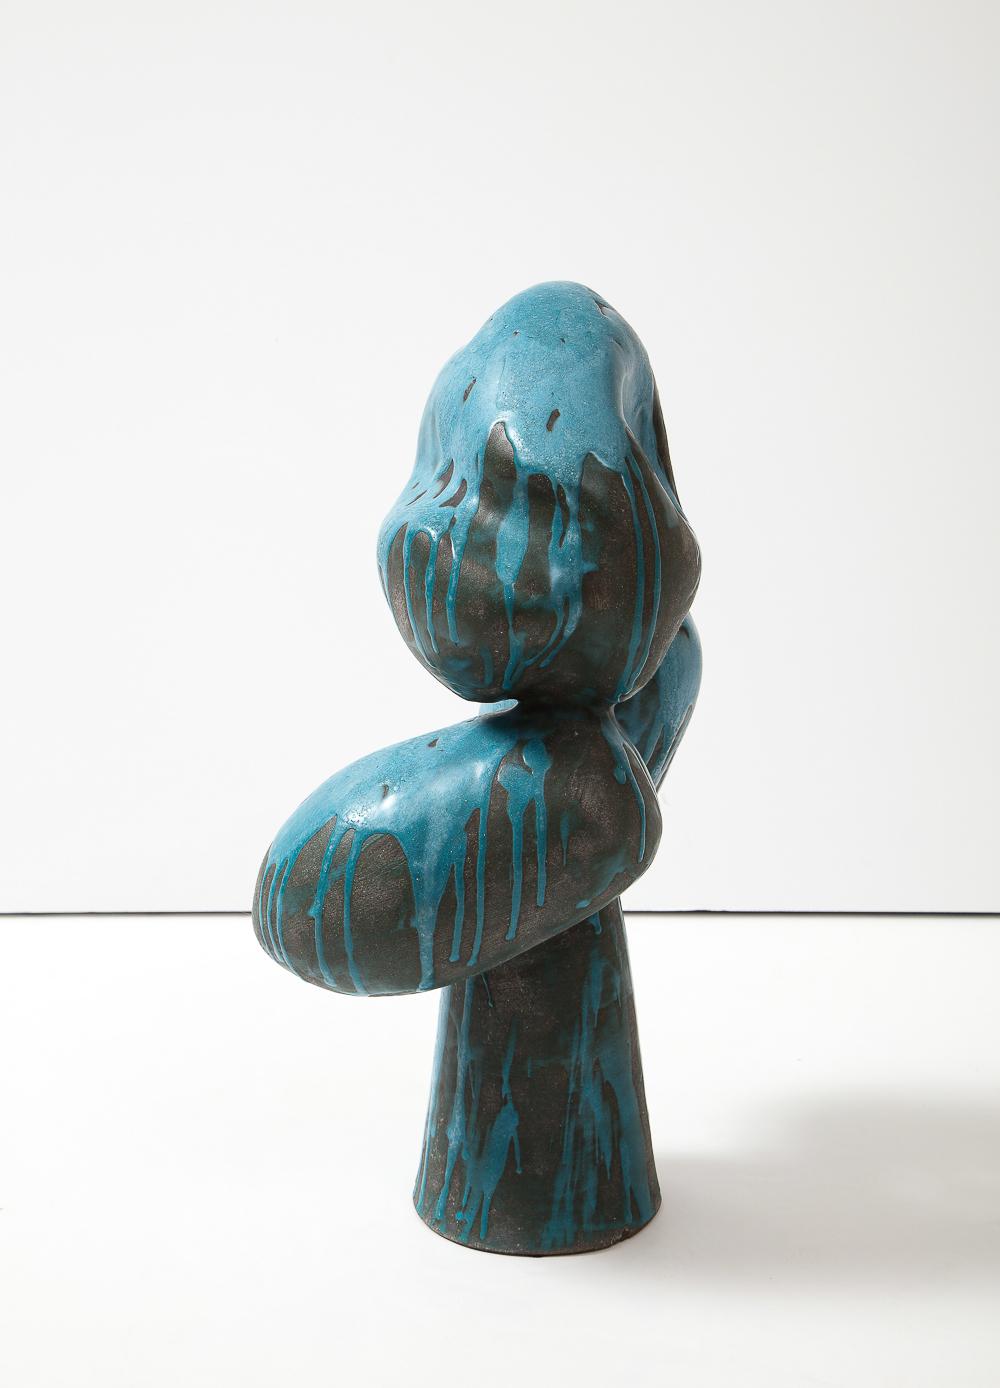 Céramique émaillée. Sculpture d'assemblage avec 3 formes organiques en équilibre sur une base conique. Argile noire dégoulinant d'une glaçure de couleur turquoise. Artiste - signé sur la face inférieure.